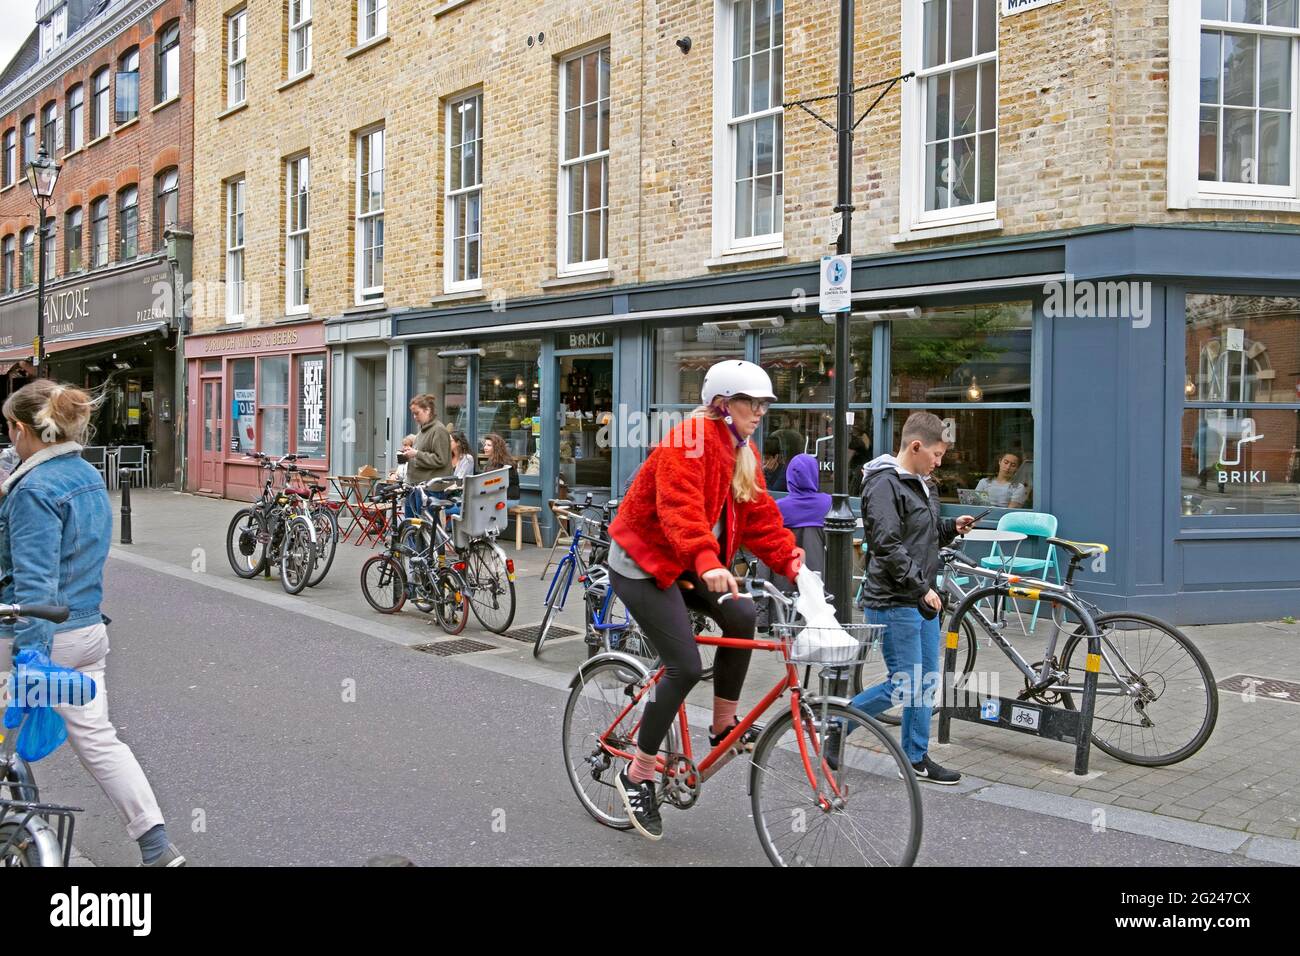 Mujer paseando en bicicleta fuera del restaurante Briki y el cartel de la calle Exmouth Market en el edificio en Clerkenwell Islington Londres EC1 Inglaterra Reino Unido KATHY DEWITT Foto de stock